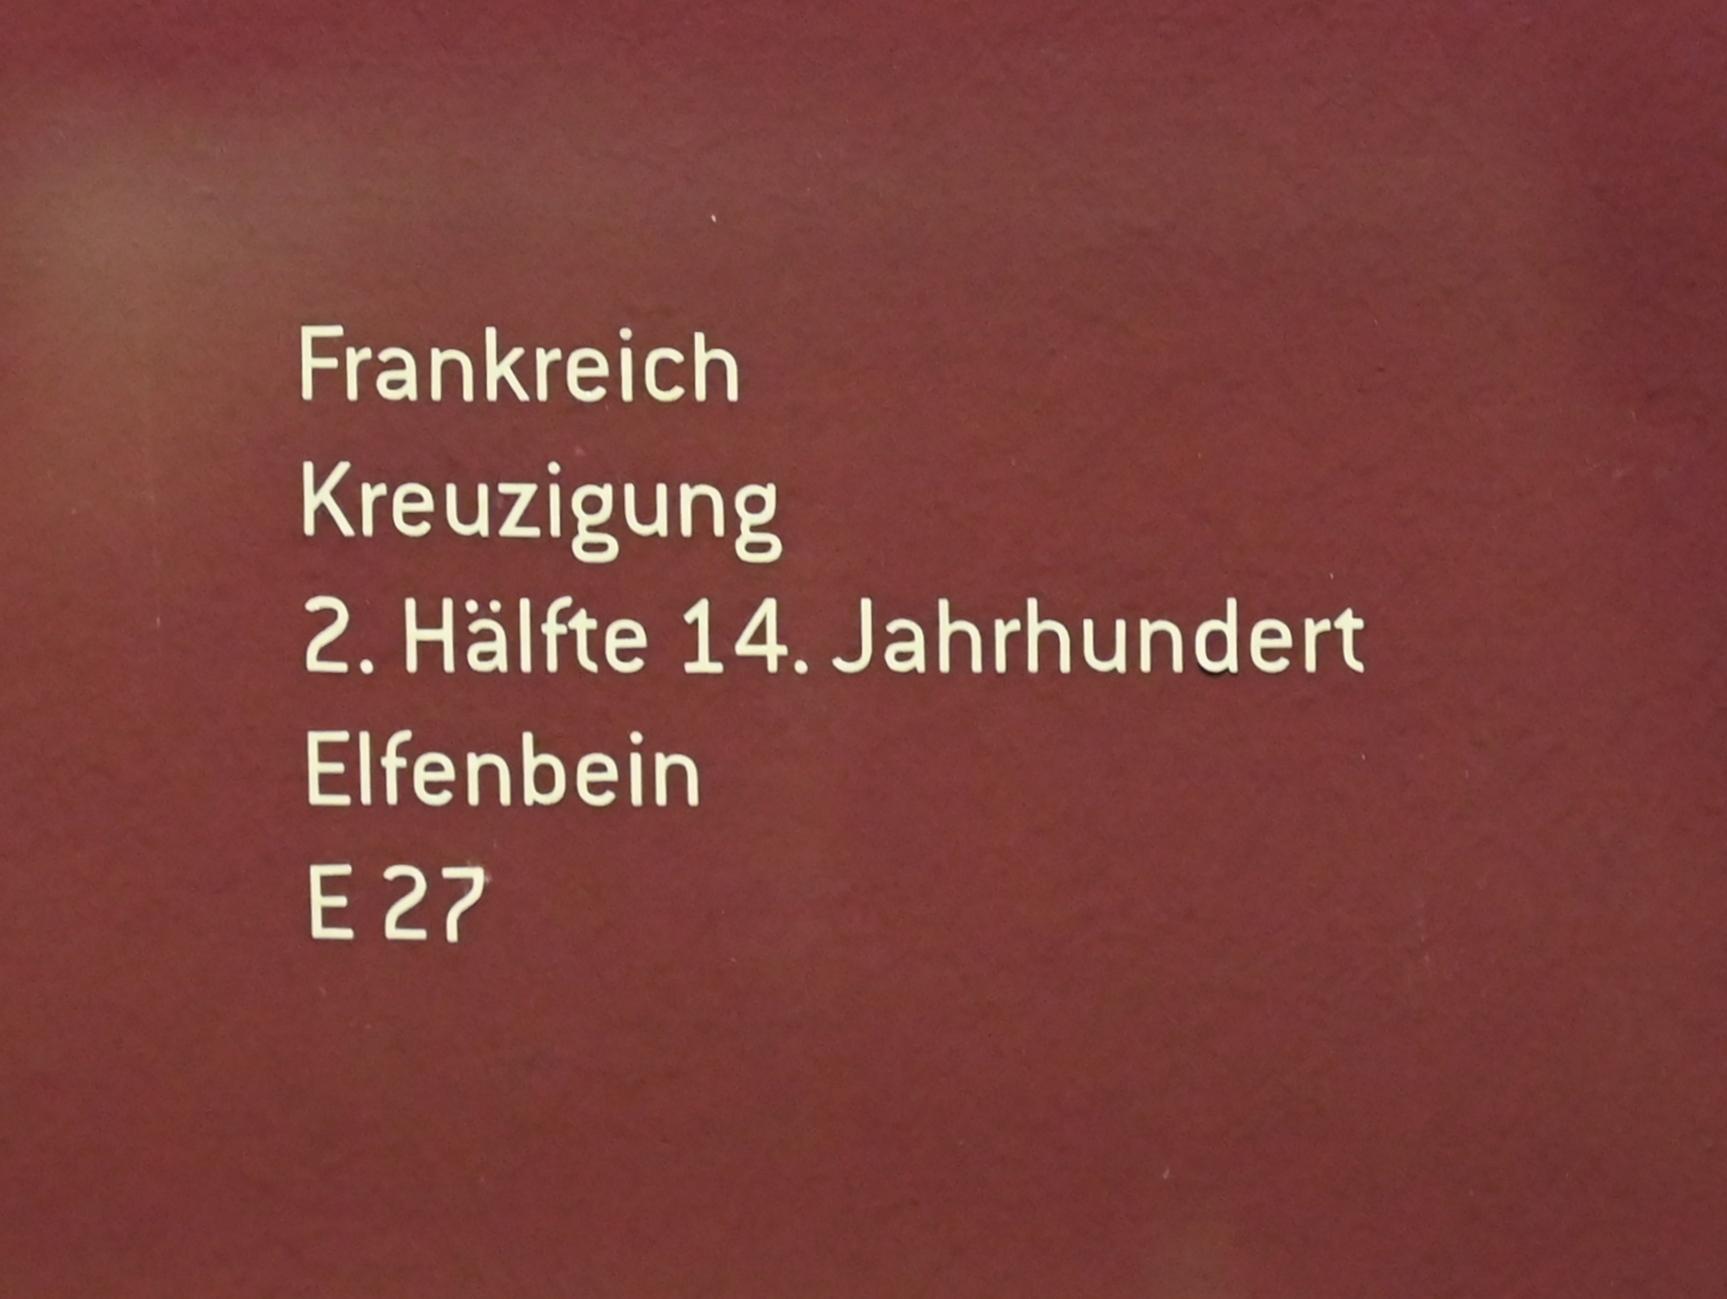 Kreuzigung, Innsbruck, Tiroler Landesmuseum, Ferdinandeum, Mittelalter 3, 2. Hälfte 14. Jhd., Bild 2/2